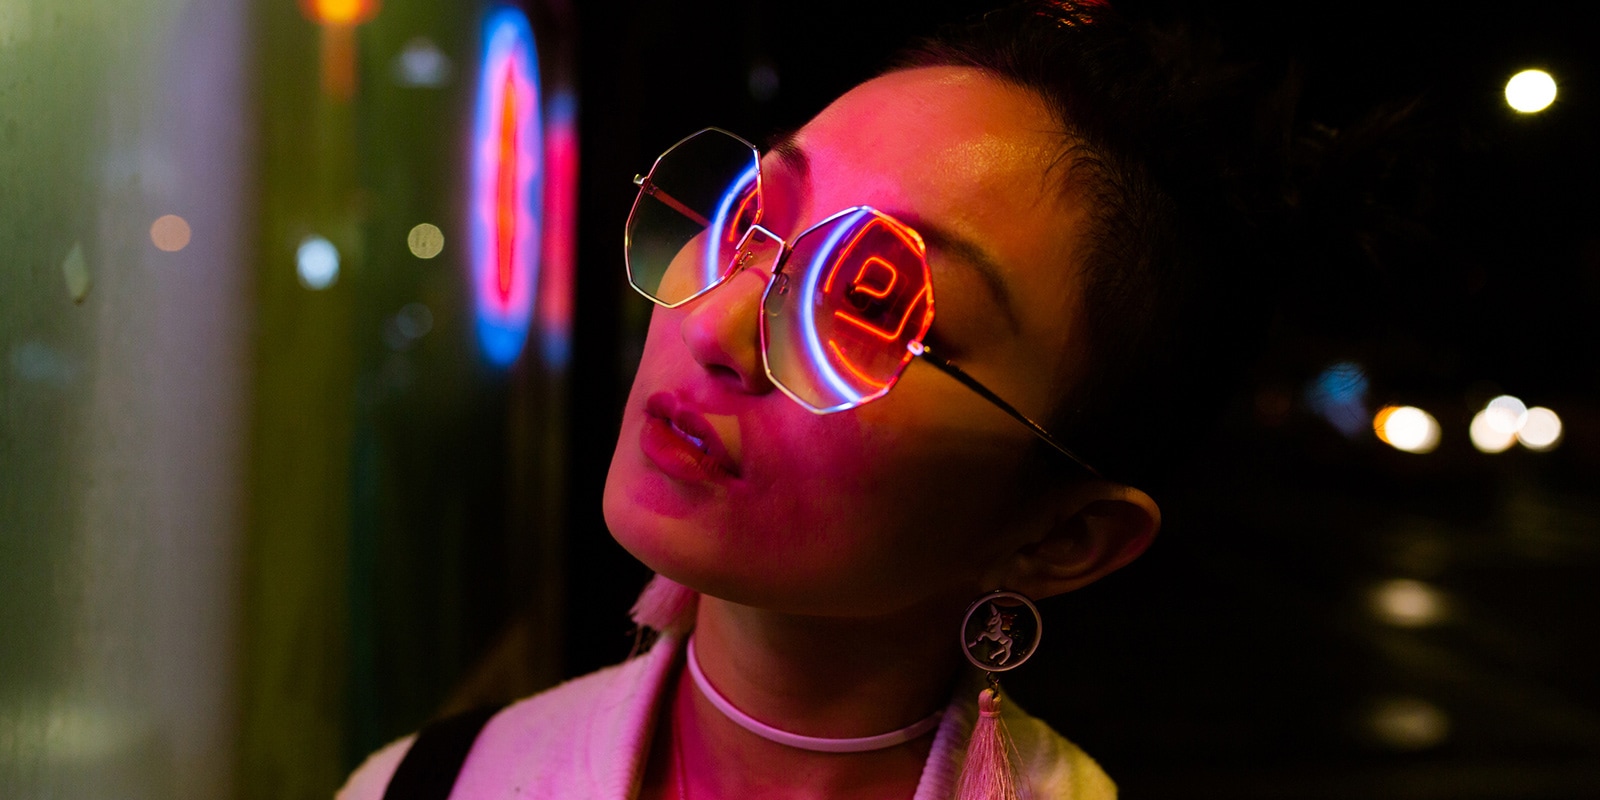 Bližnji posnetek ženske s sončnimi očali, od katere se odbijajo neonske luči